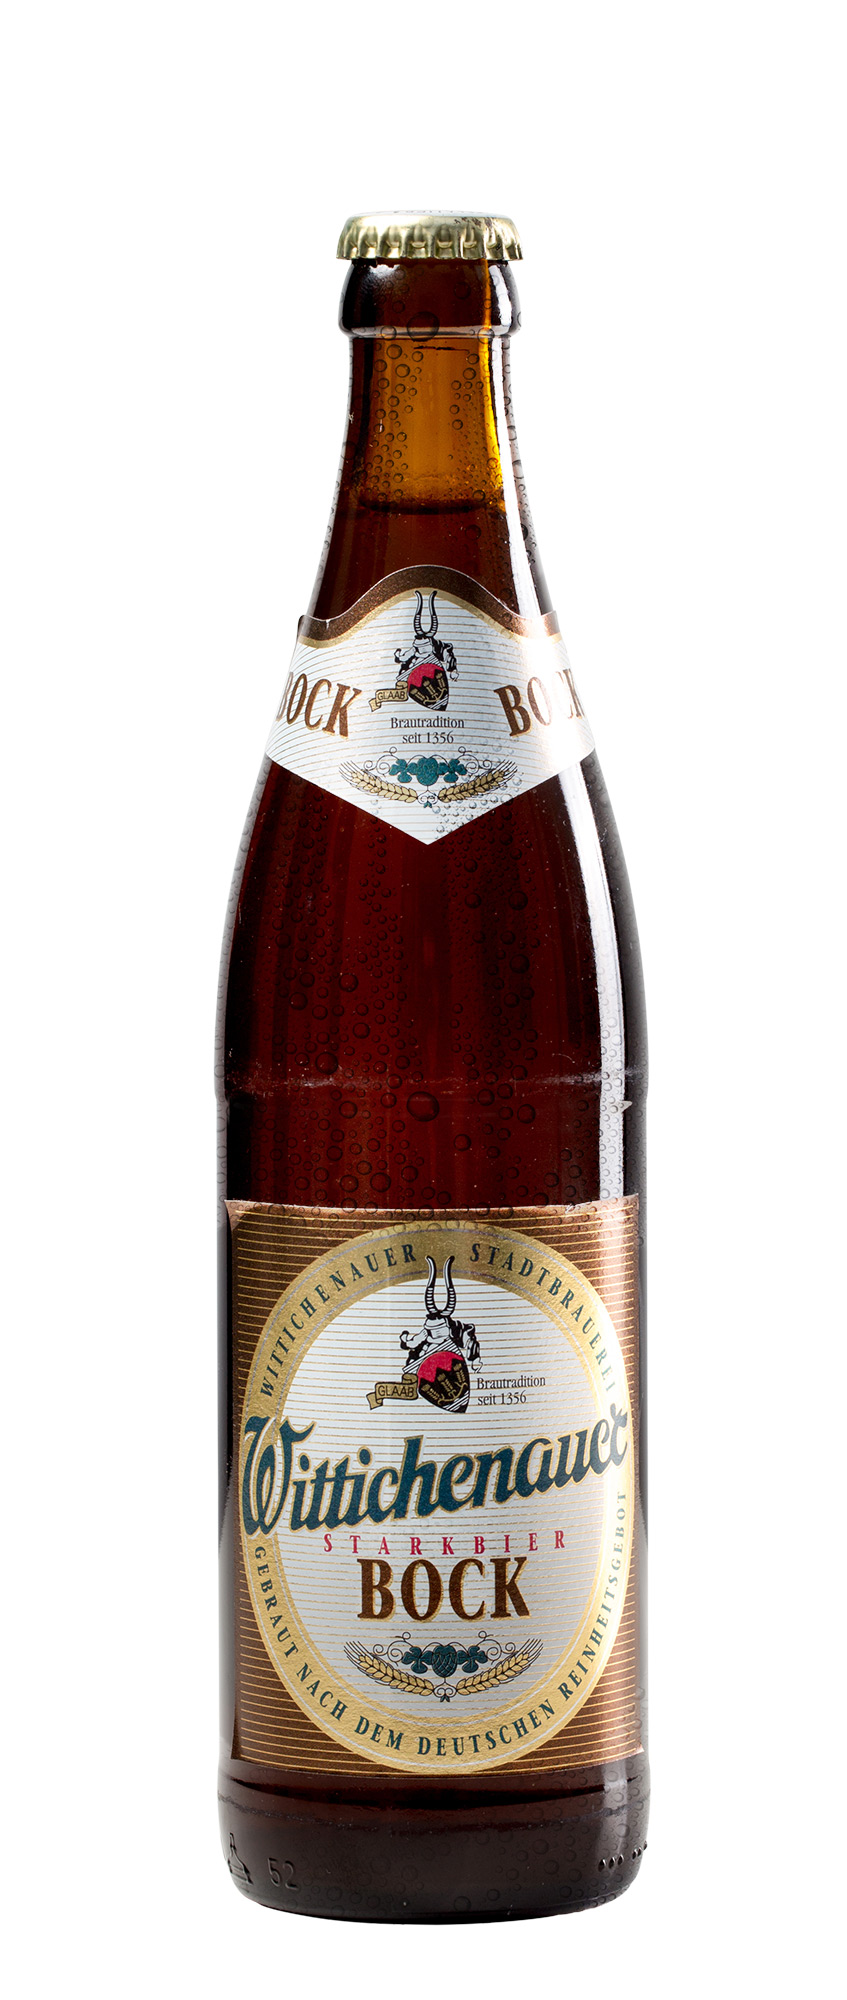 Starkbier Bock - Wittichenauer Bier